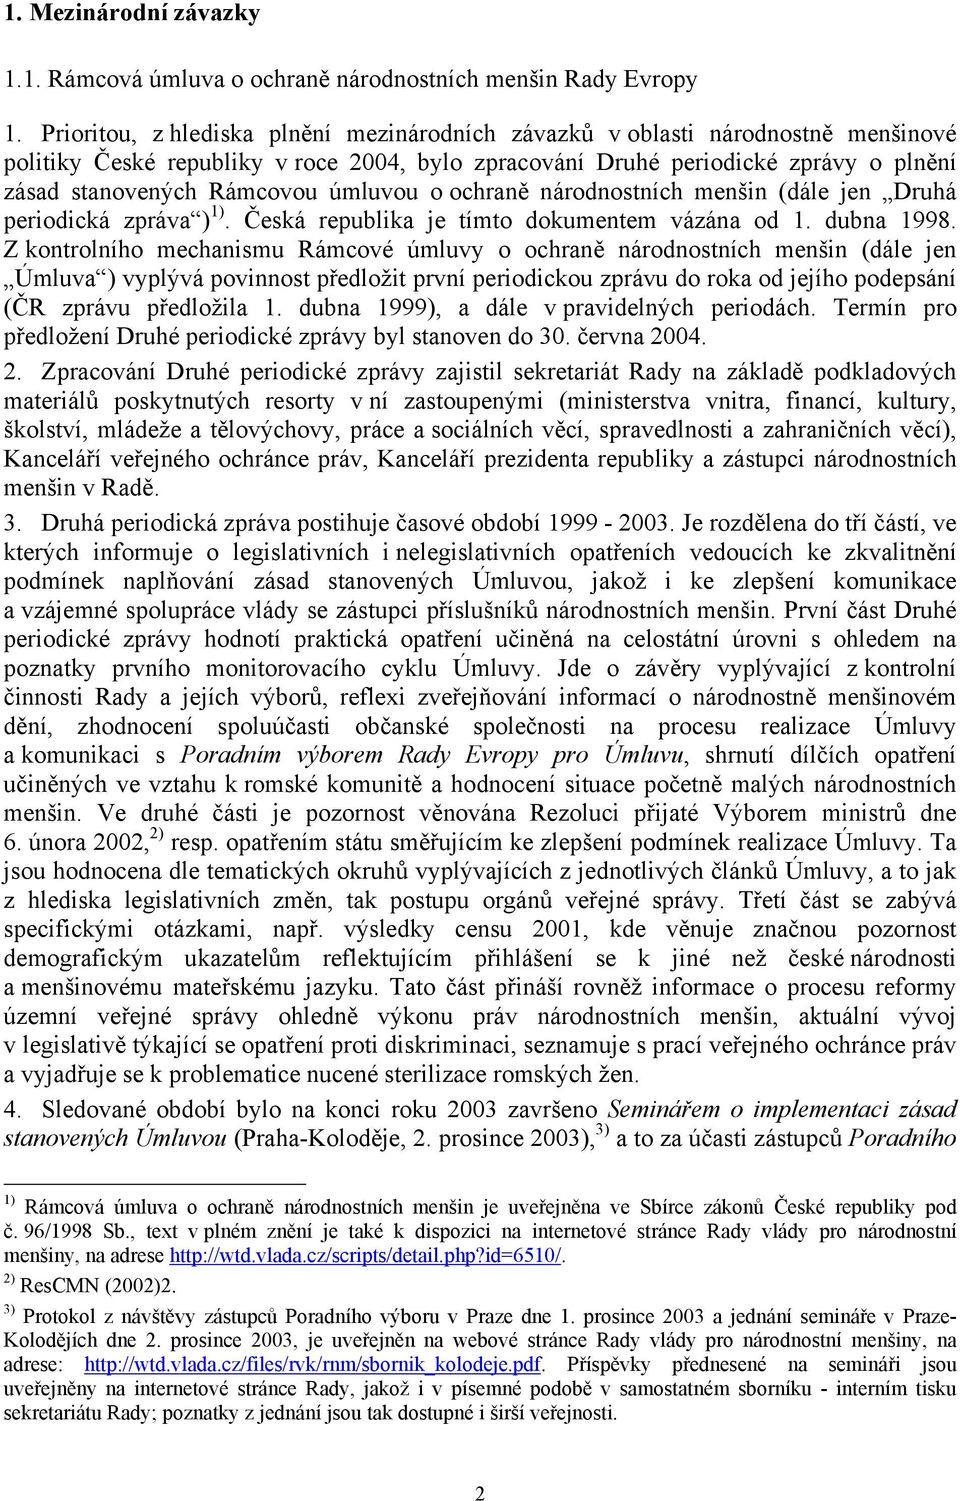 úmluvou o ochraně národnostních menšin (dále jen Druhá periodická zpráva ) 1). Česká republika je tímto dokumentem vázána od 1. dubna 1998.